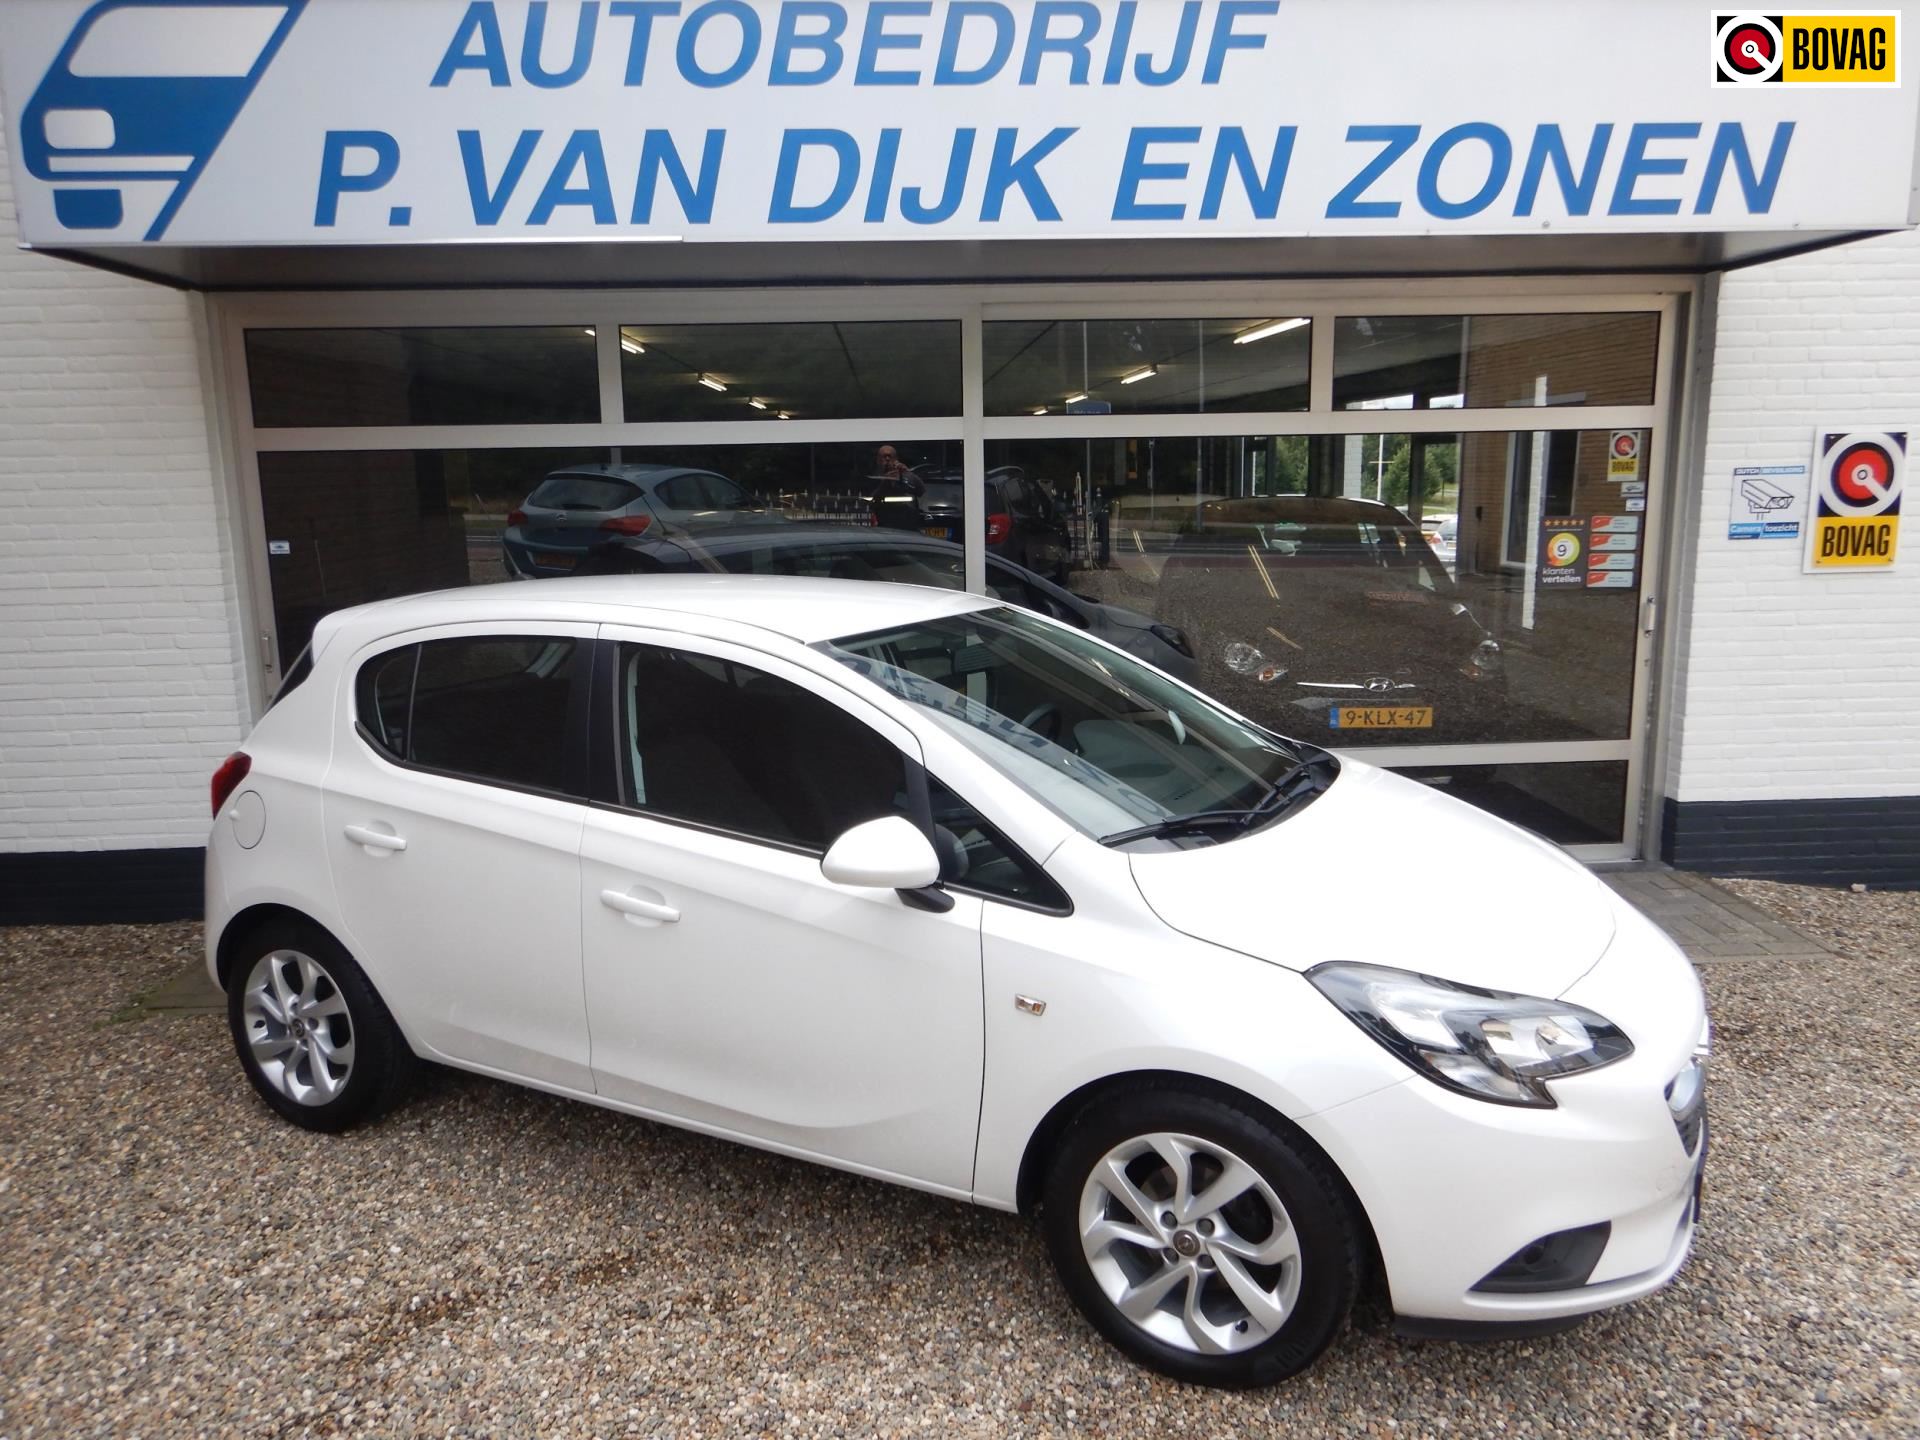 Opel Corsa occasion - Autobedrijf P. van Dijk en Zonen